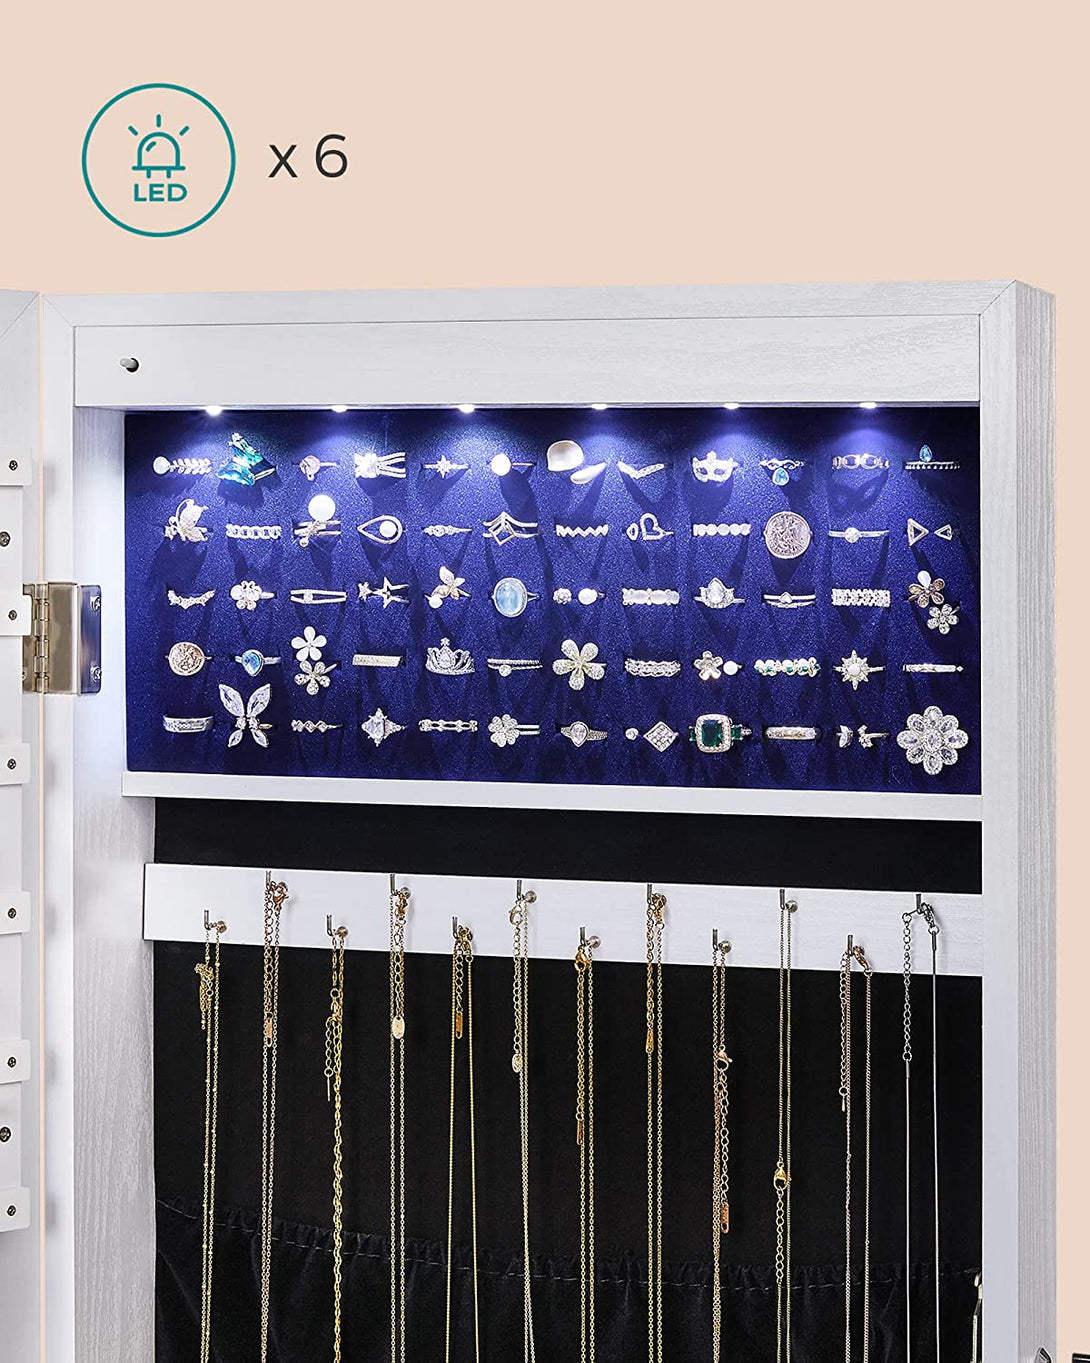 LED držalo za nakit lahko namestite na steno ali vrata 37 x 108 x 9,3 cm | SONGMICS-Vasdom.si